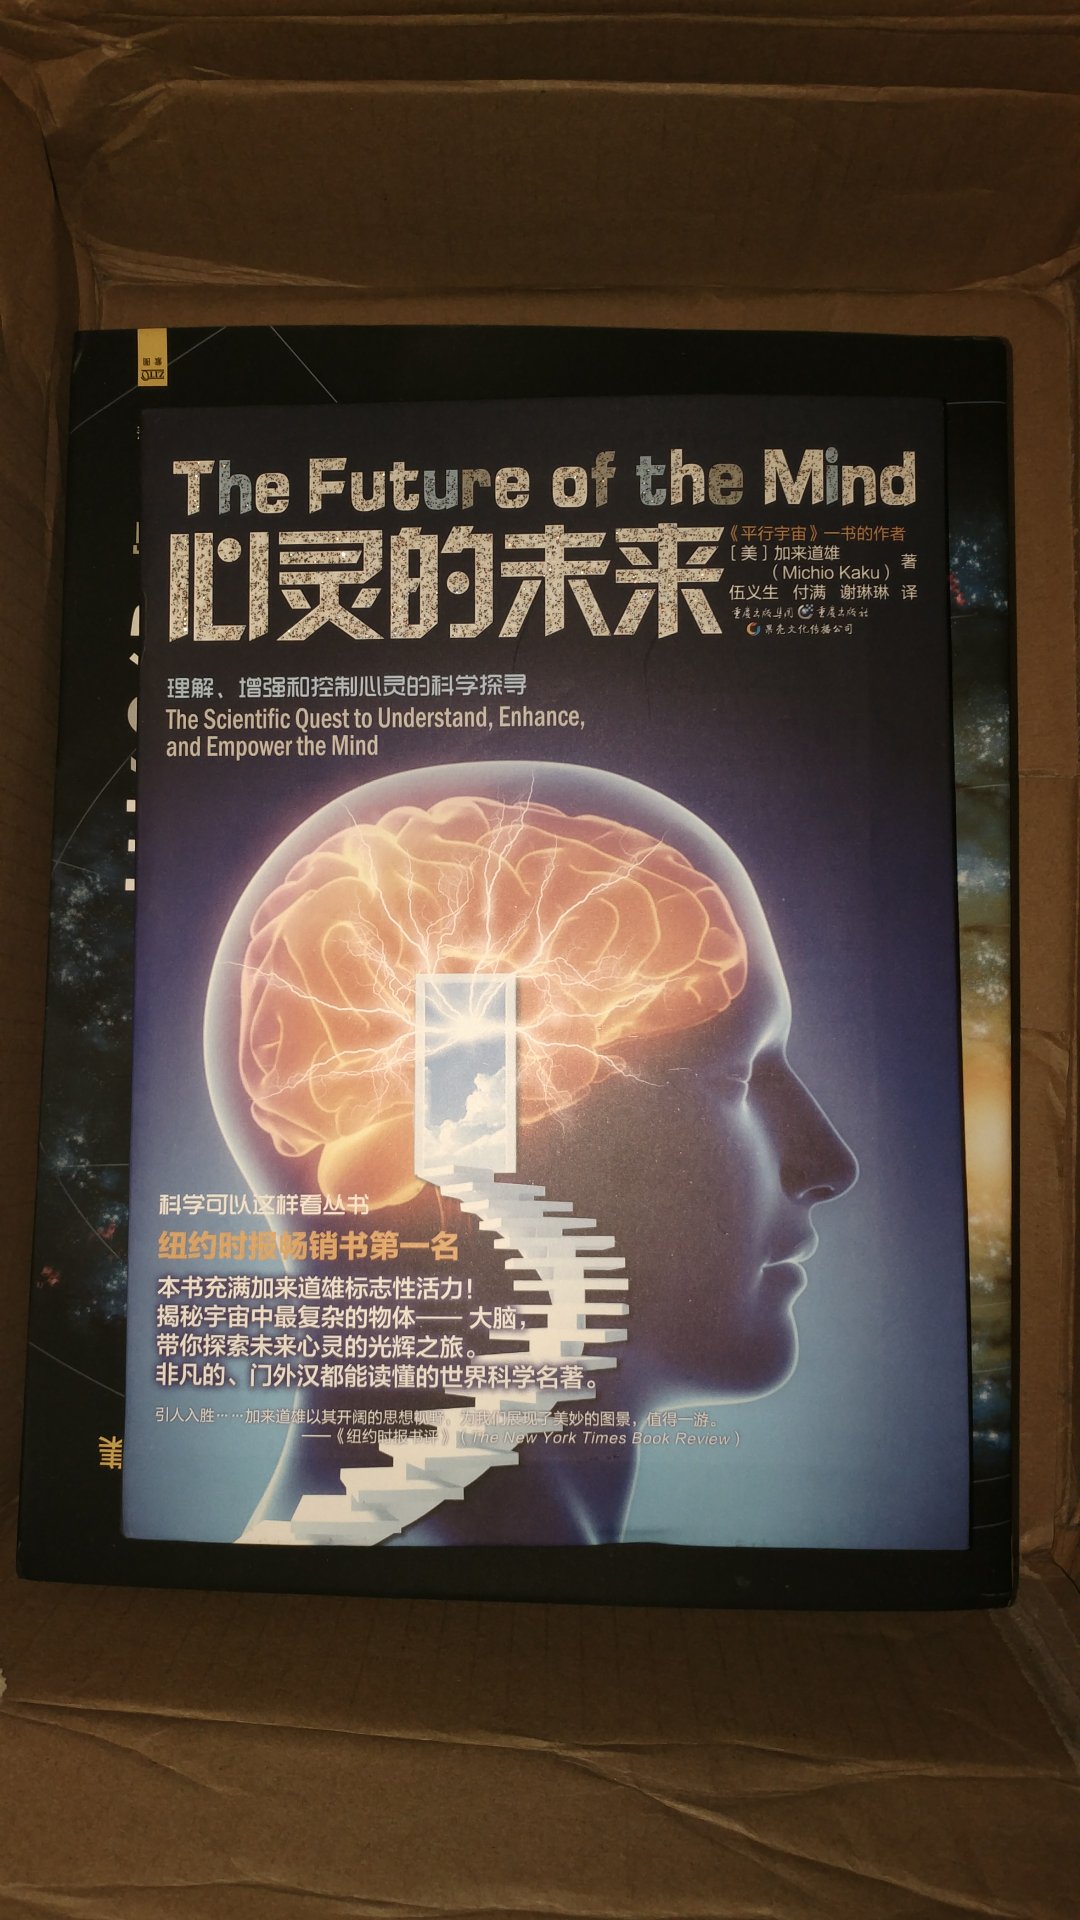 加来道雄的科普书籍都不错，写得比较浅显又有深度，这本书对未来的神经科学和人工智能的发展进行了展望，很好看的一本书。